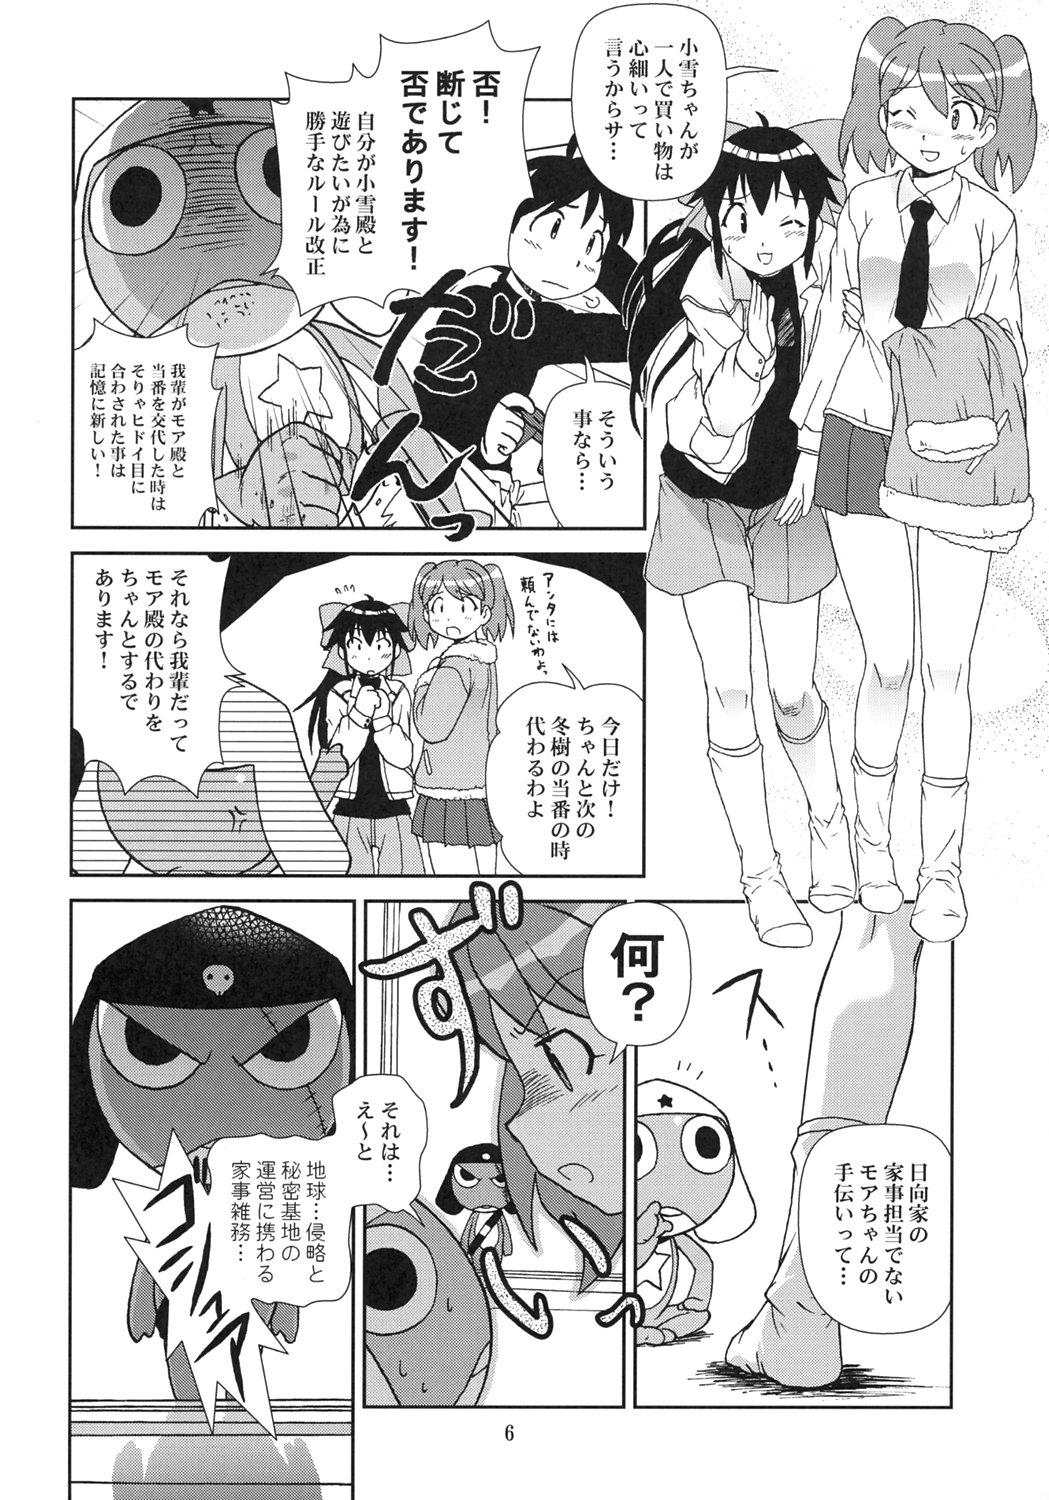 Penetration Kokoro ga Mondai - Keroro gunsou Redbone - Page 5